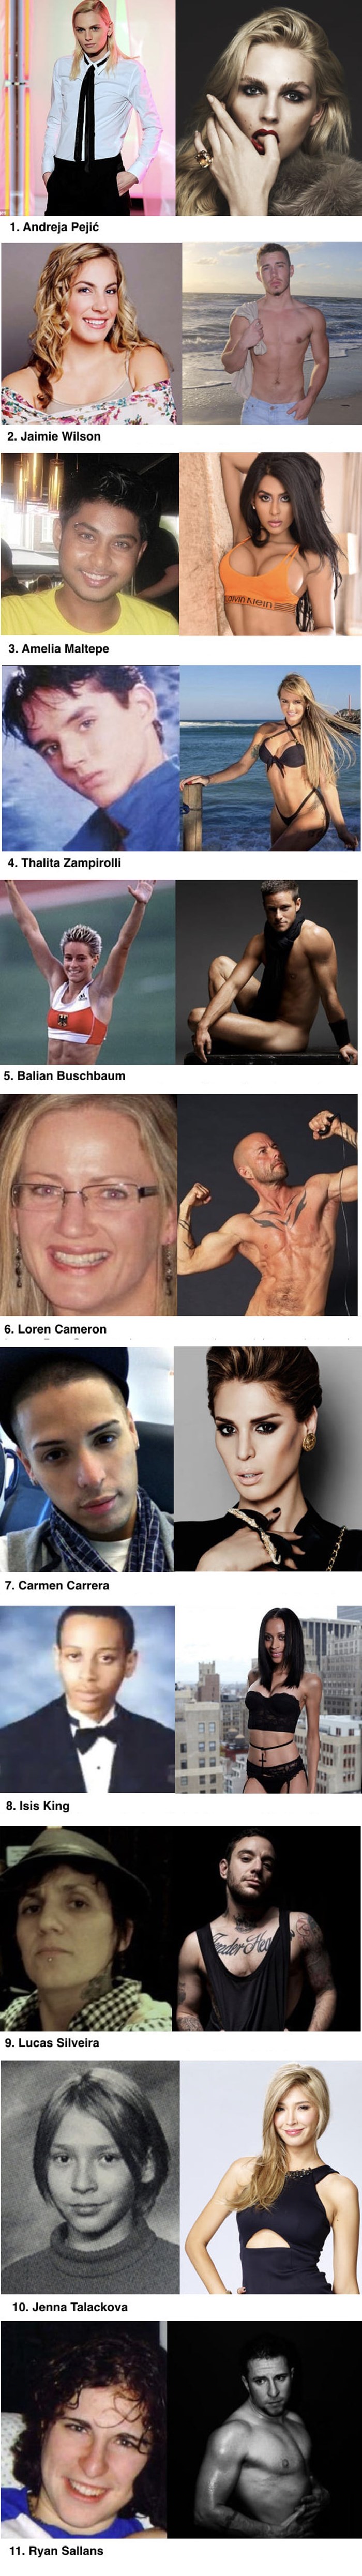 11 osoba fotografiranih prije i nakon operacije za promjenu spola